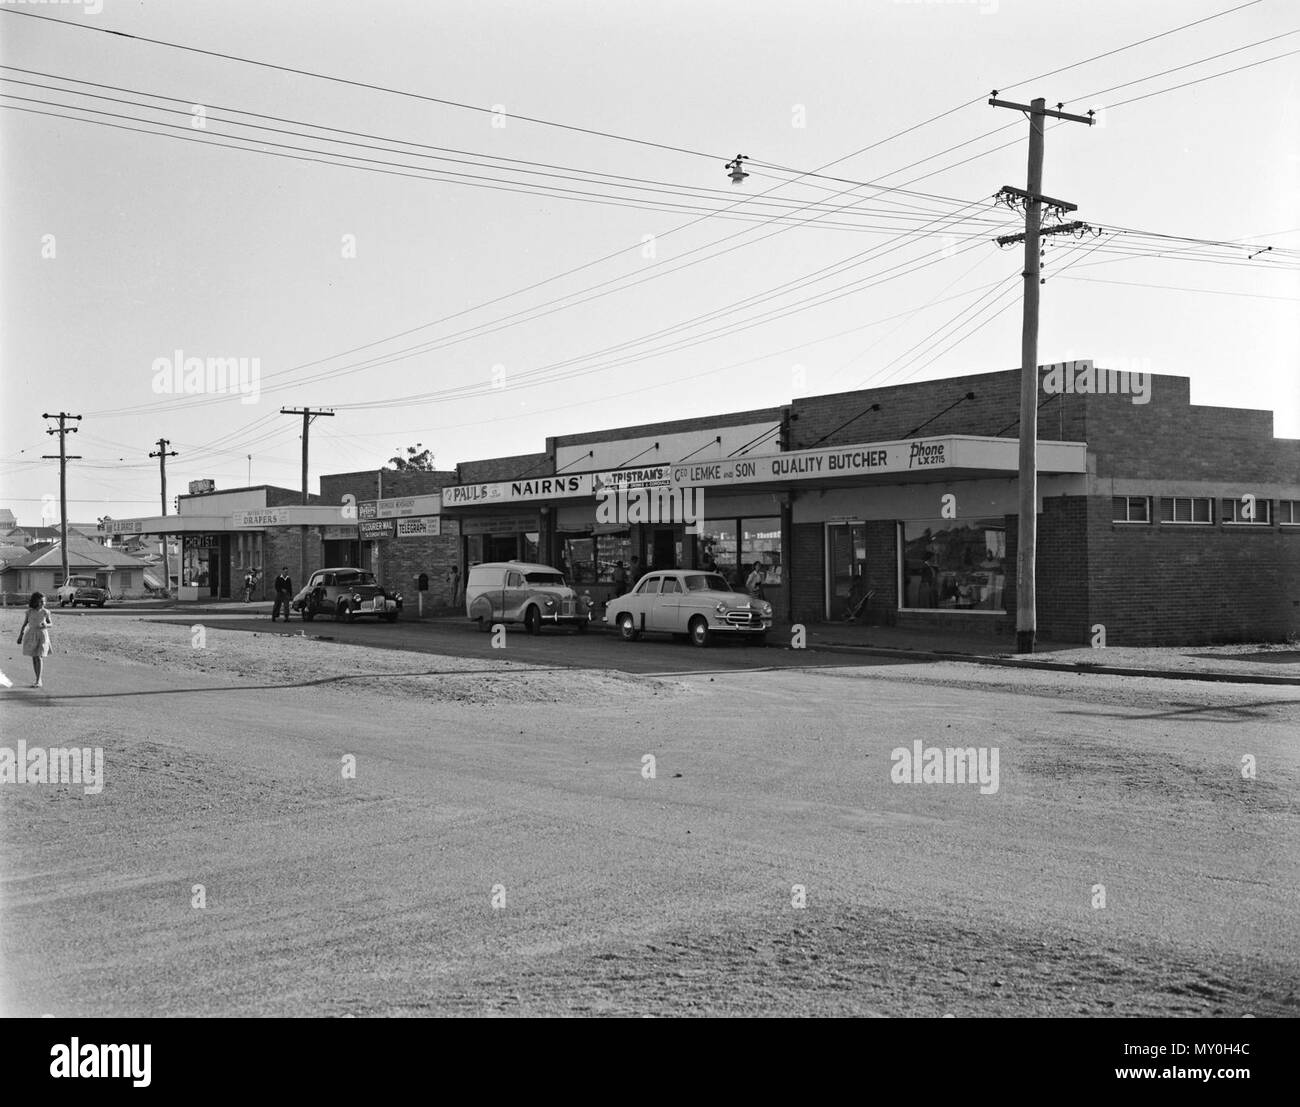 Corrie Street, Chermside, c 1955. La Commission du logement du Queensland a développé ce domaine de Chermside au début des années 50. Une petite partie des terres a été mis de côté pour ces magasins, construit c 1953 pour servir le développement de nouveaux logements. Banque D'Images